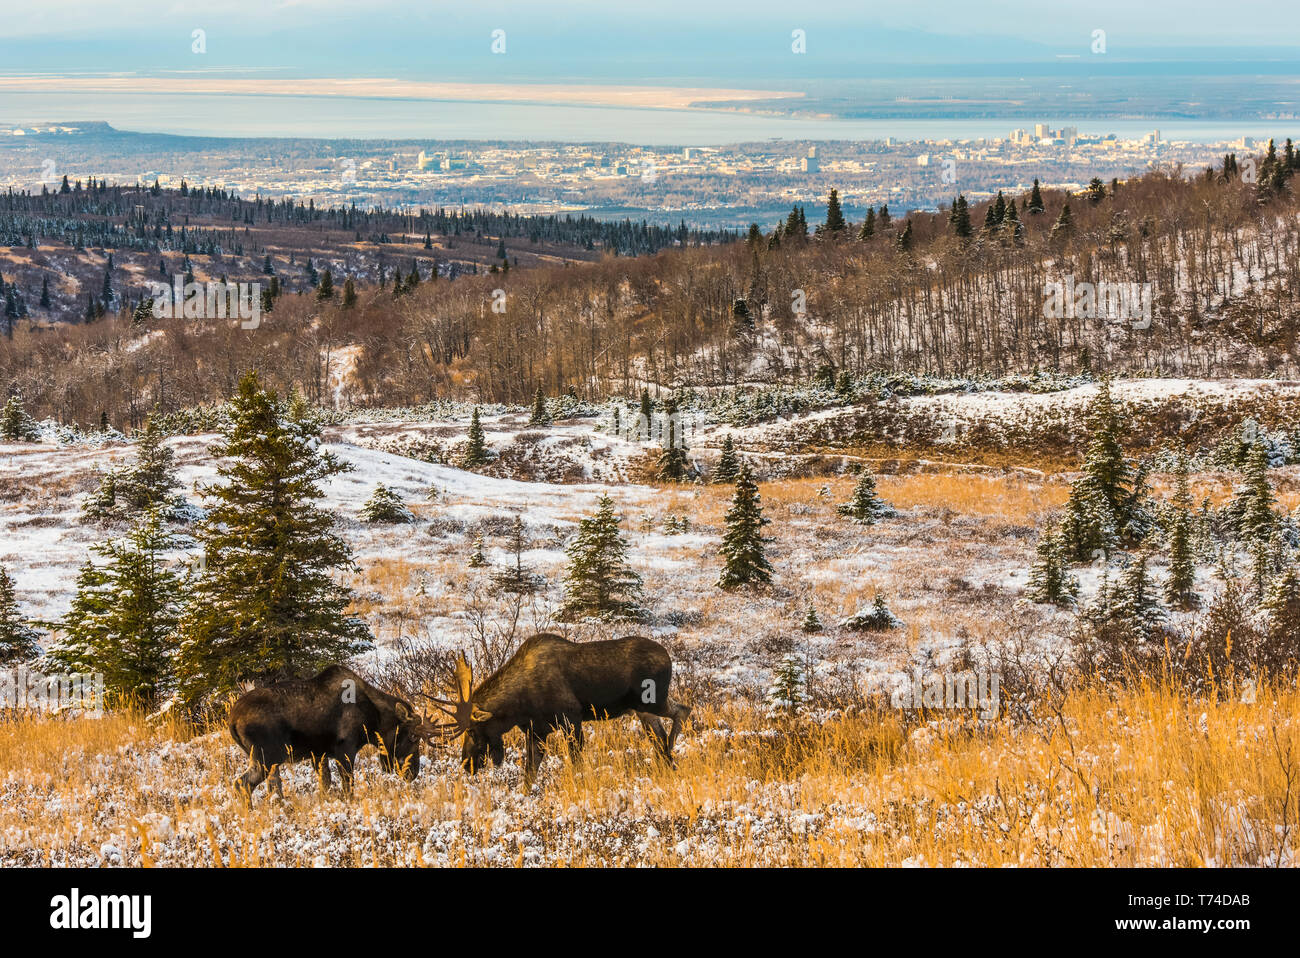 Deux orignal (Alces alces) combats durant le rut à la fin de l'automne une journée au Pass Powerline près d'Anchorage, Alaska, États-Unis d'Amérique Banque D'Images